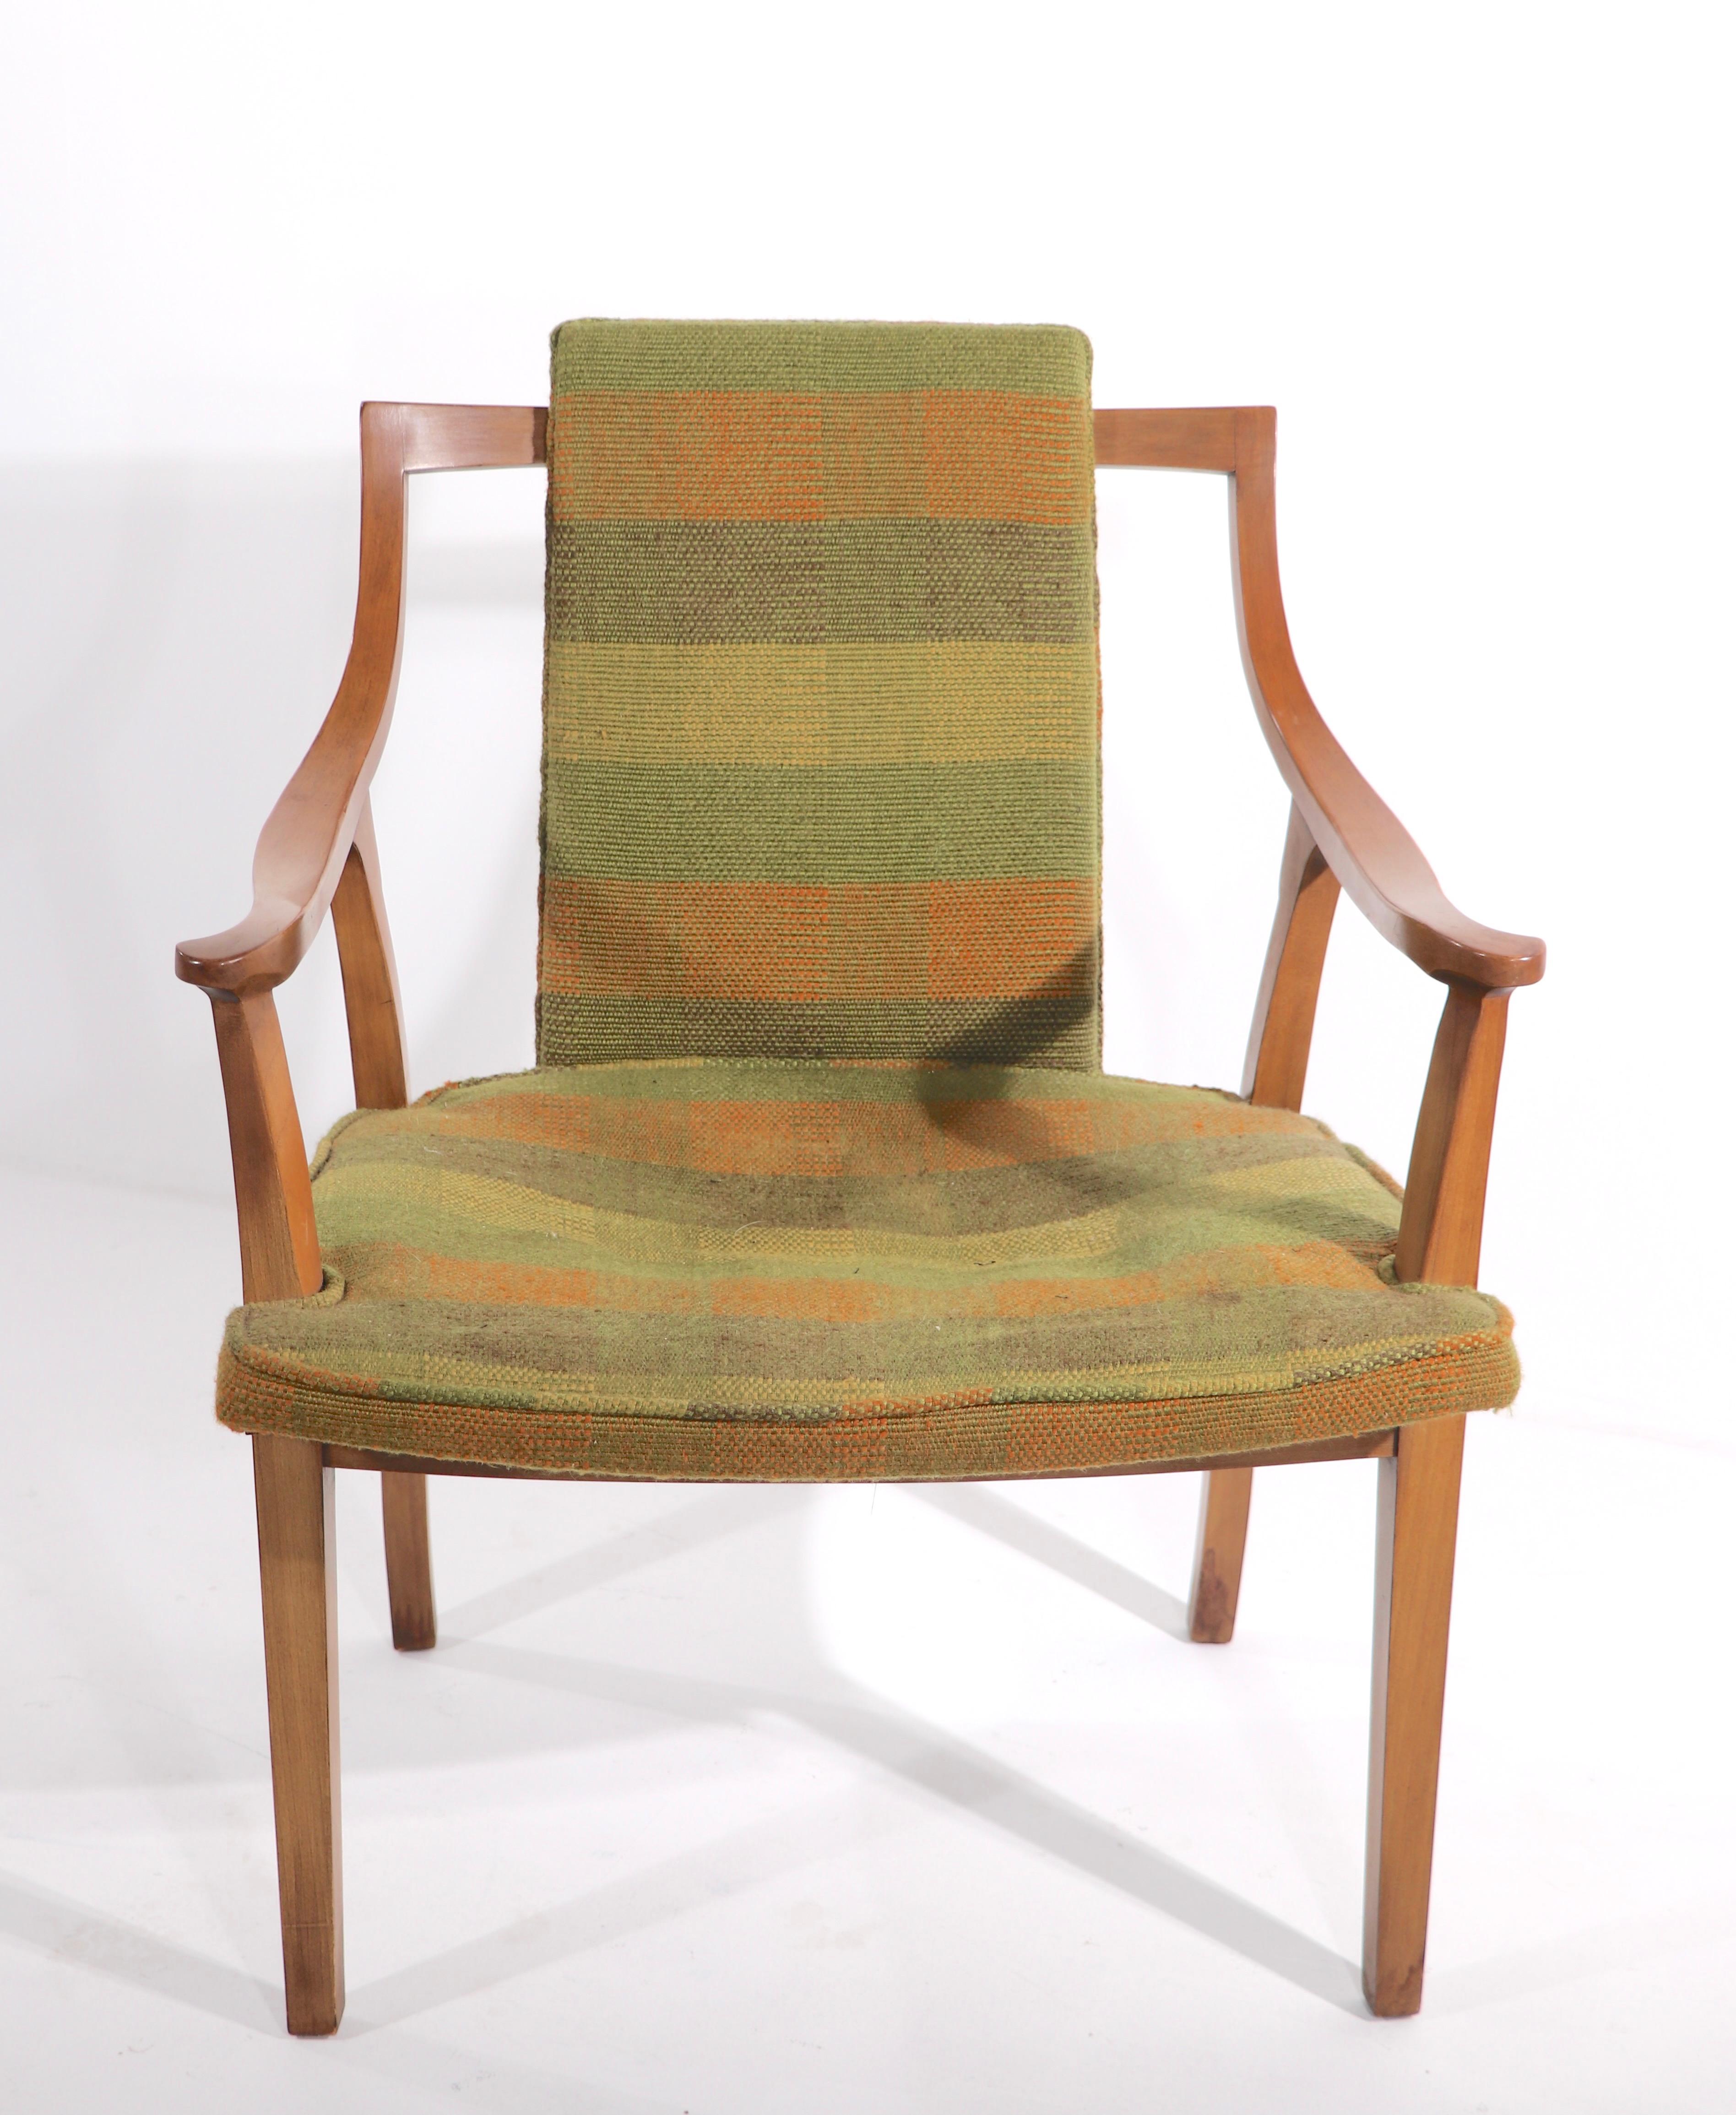 Schickes und stilvolles Paar offener Armlehnstühle von John Widdicomb. Diese raffinierten Stühle haben einen geschwungenen Holzrahmen, der eine gepolsterte Sitzfläche und Rückenlehne trägt. Die Stühle sind strukturell solide und stabil, beide weisen